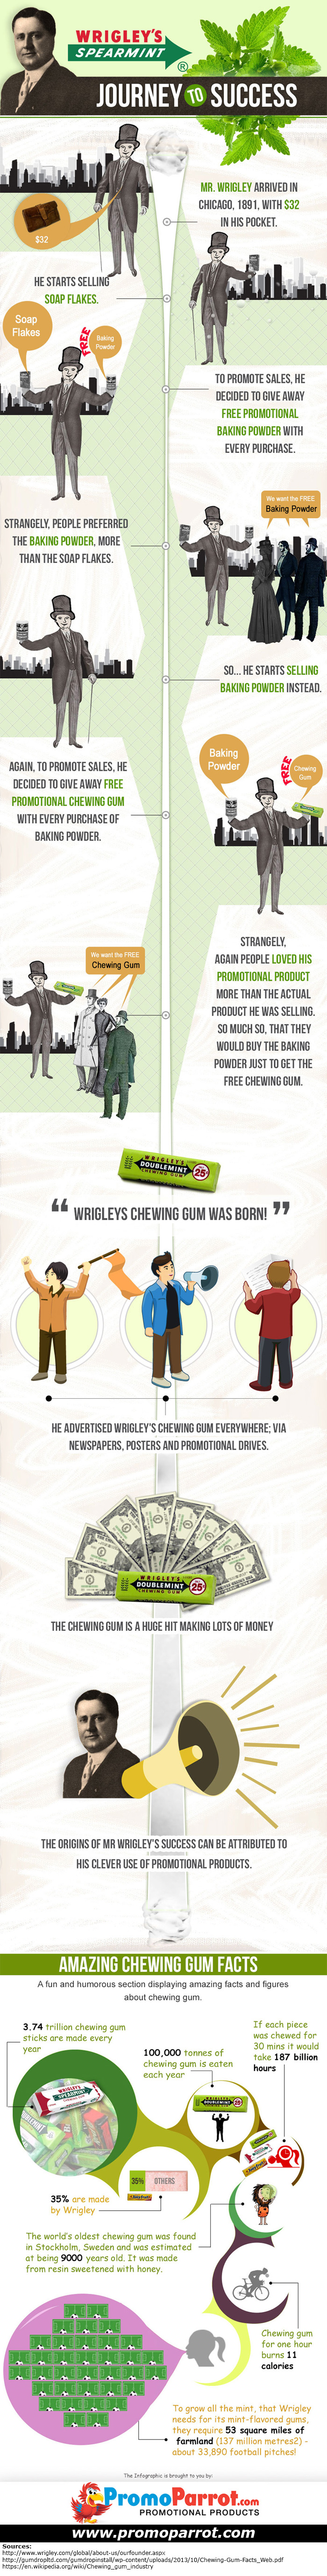 wrigleys gum infographic